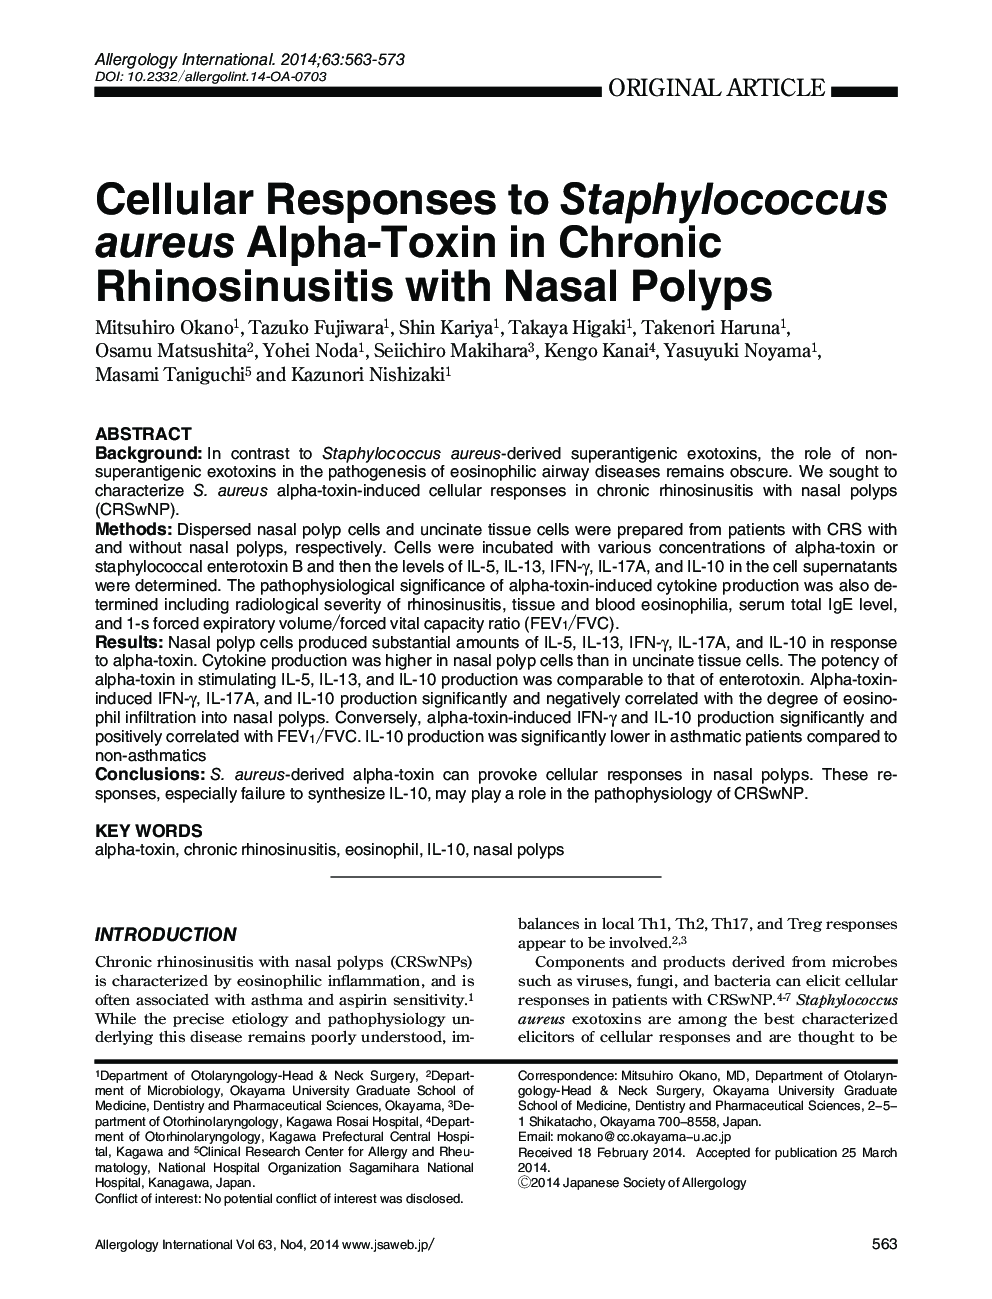 پاسخ های سلولی به آلفا-توکسین استافیلوکوک اورئوس در رینویوزیت مزمن با پولیپ بینی 